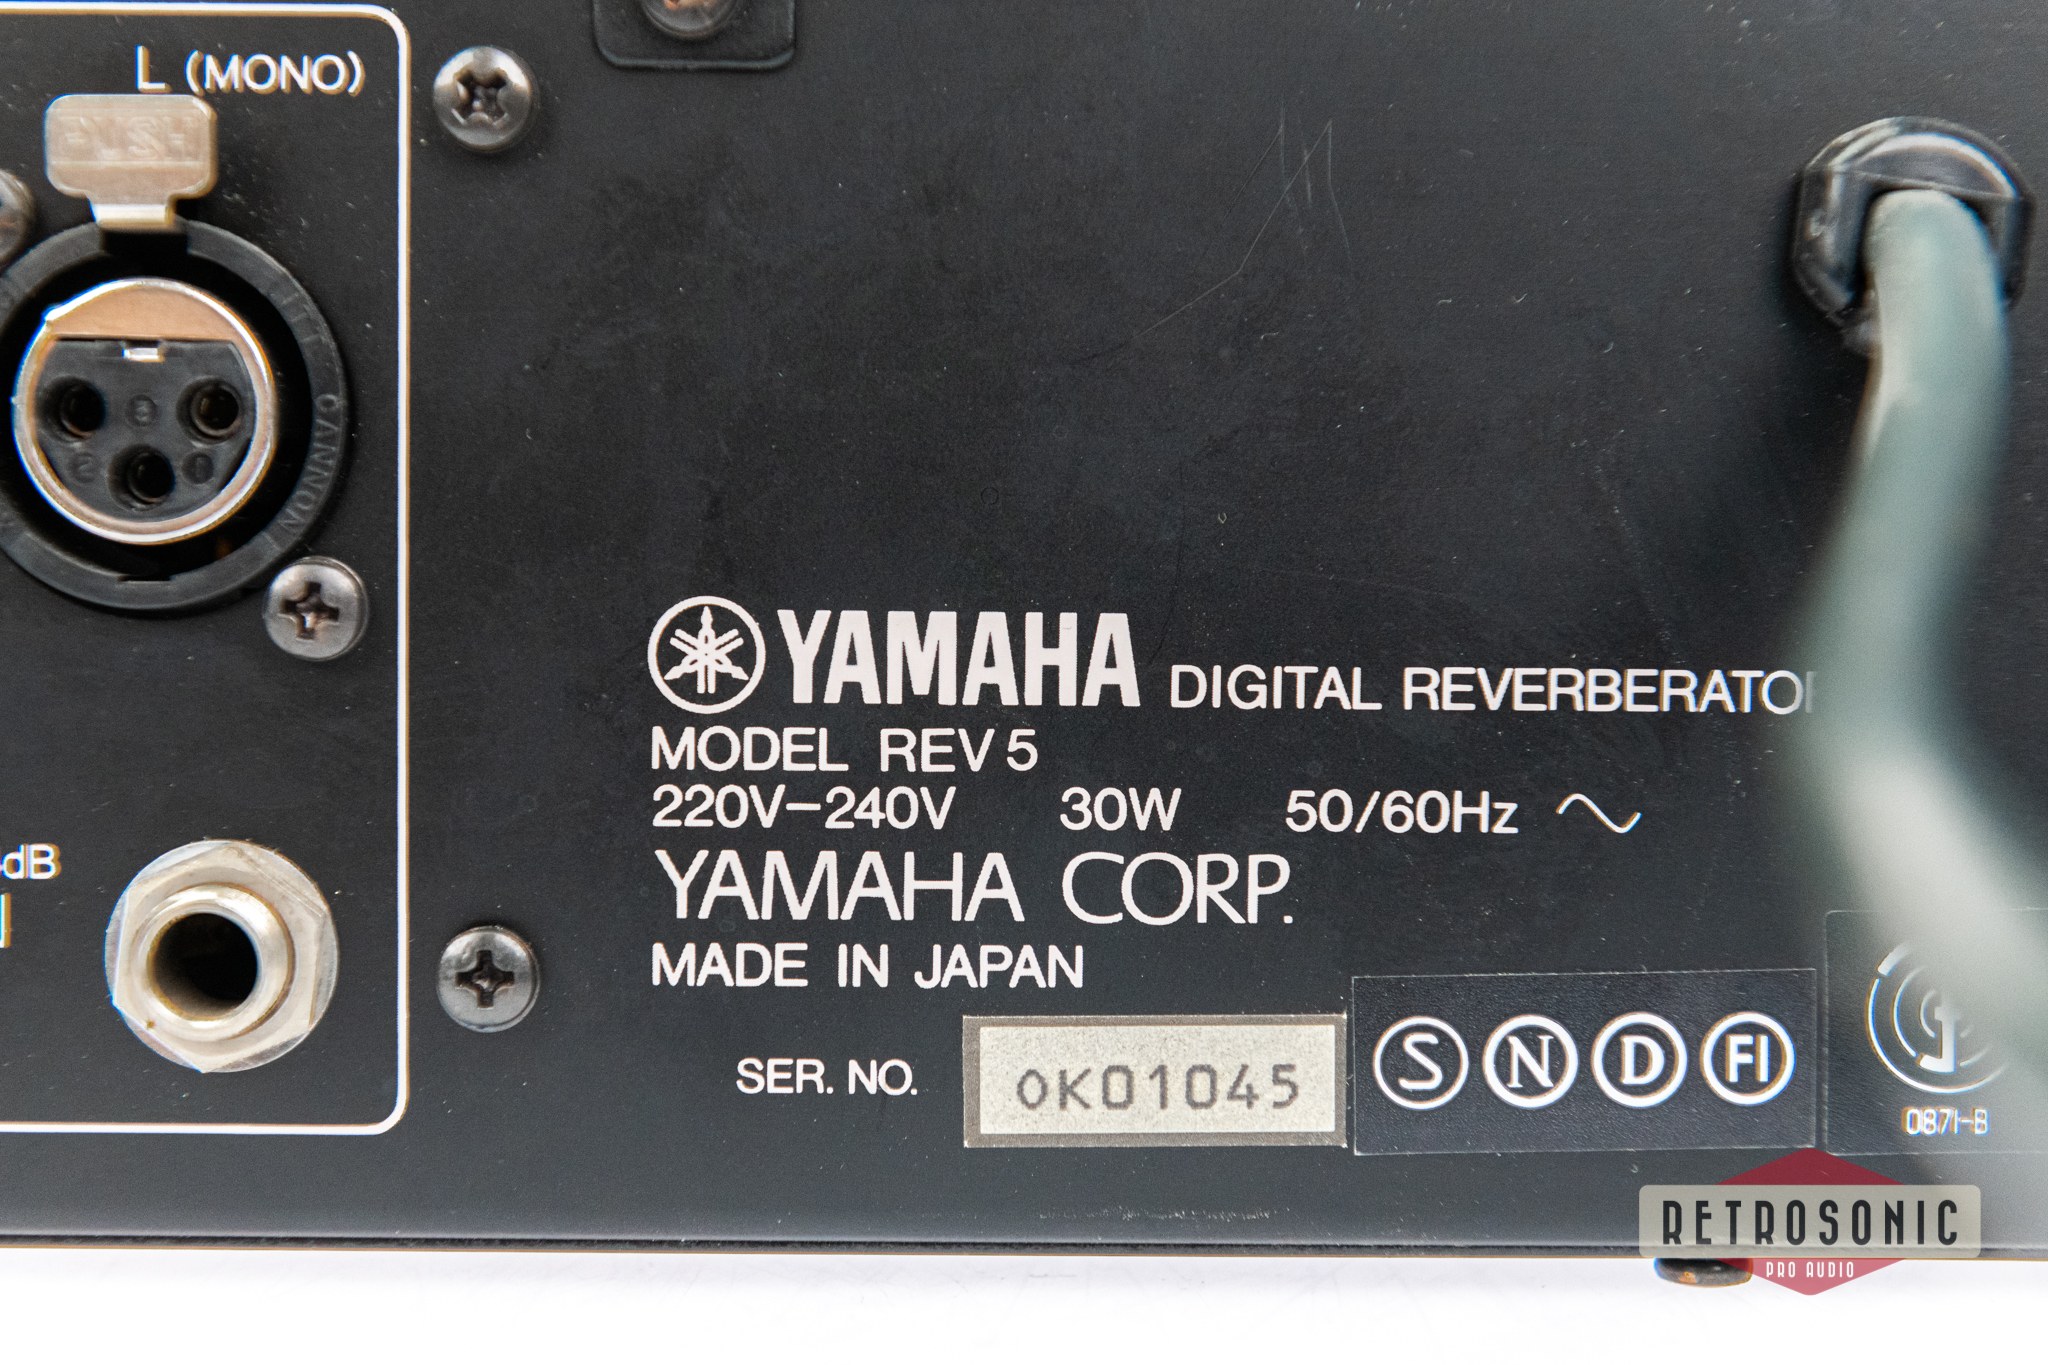 Yamaha REV-5 Digital Reverberator